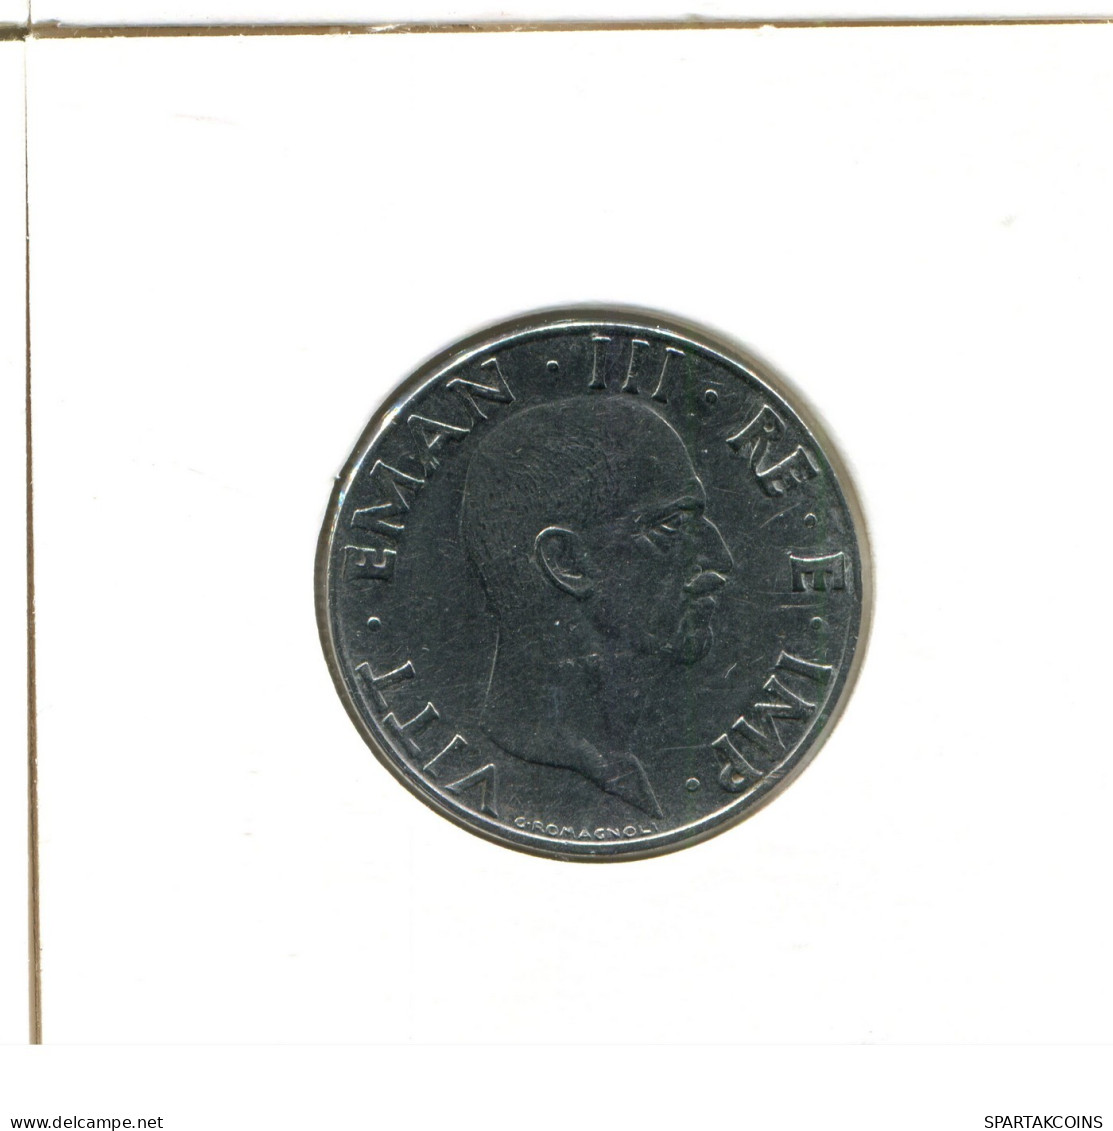 50 CENTESIMI 1940 ITALY Coin #AX834.U.A - 1900-1946 : Víctor Emmanuel III & Umberto II